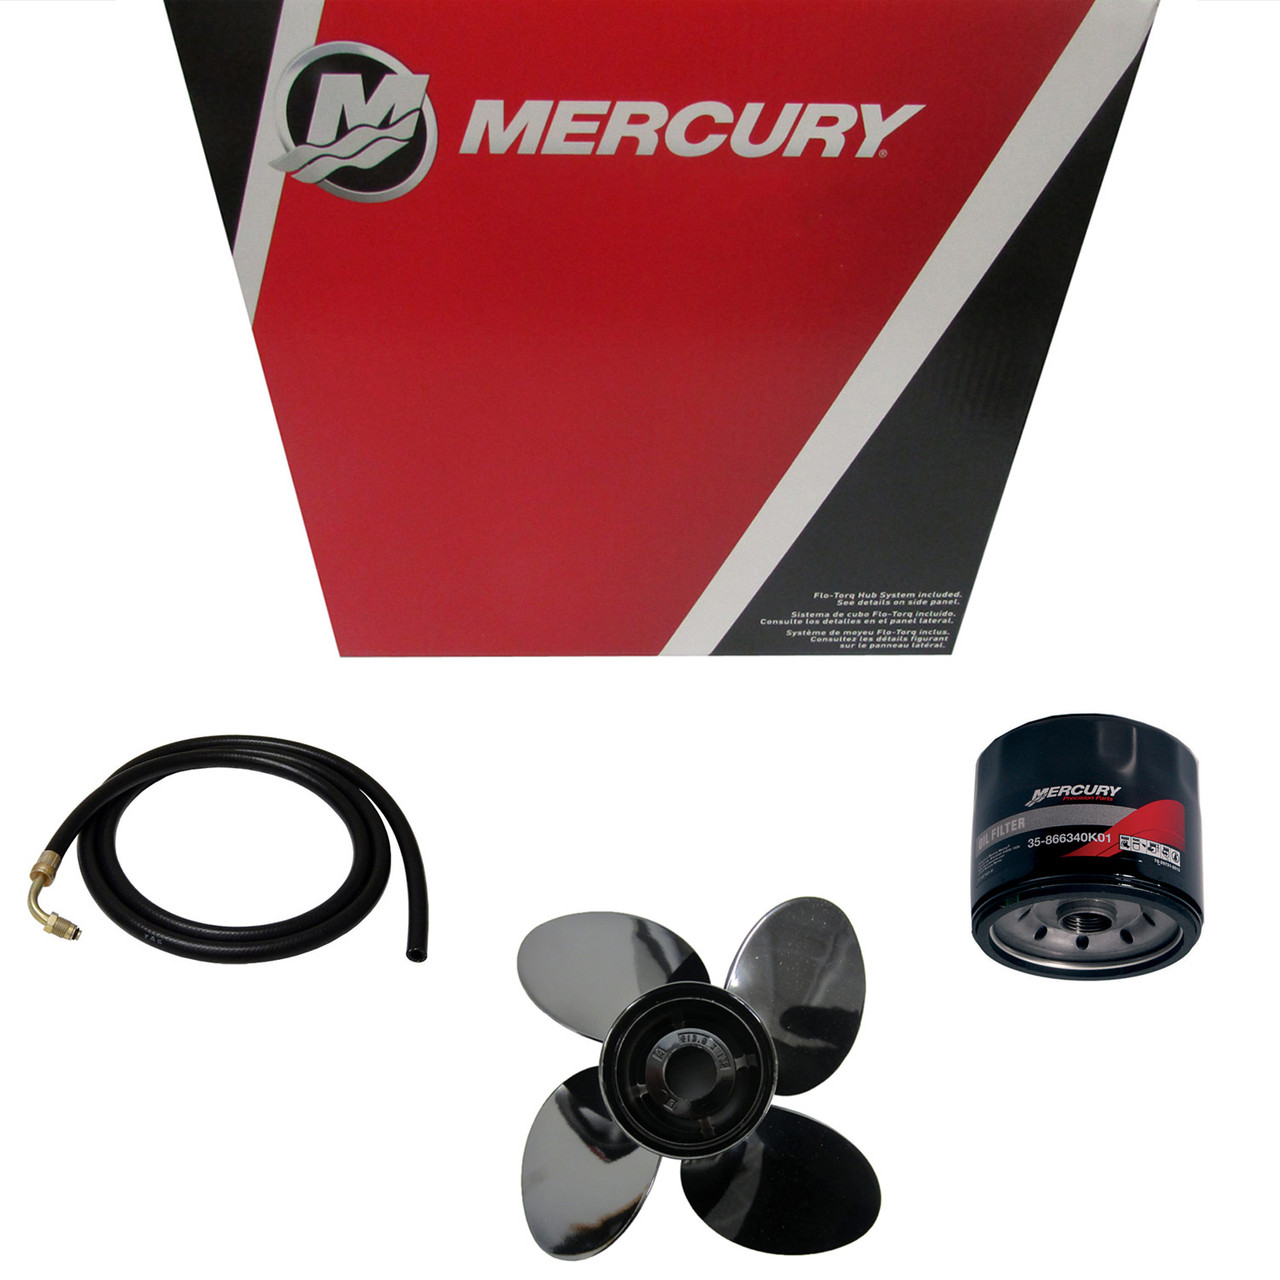 Mercury Marine/Mercruiser New OEM Engine Fitting 22-821952